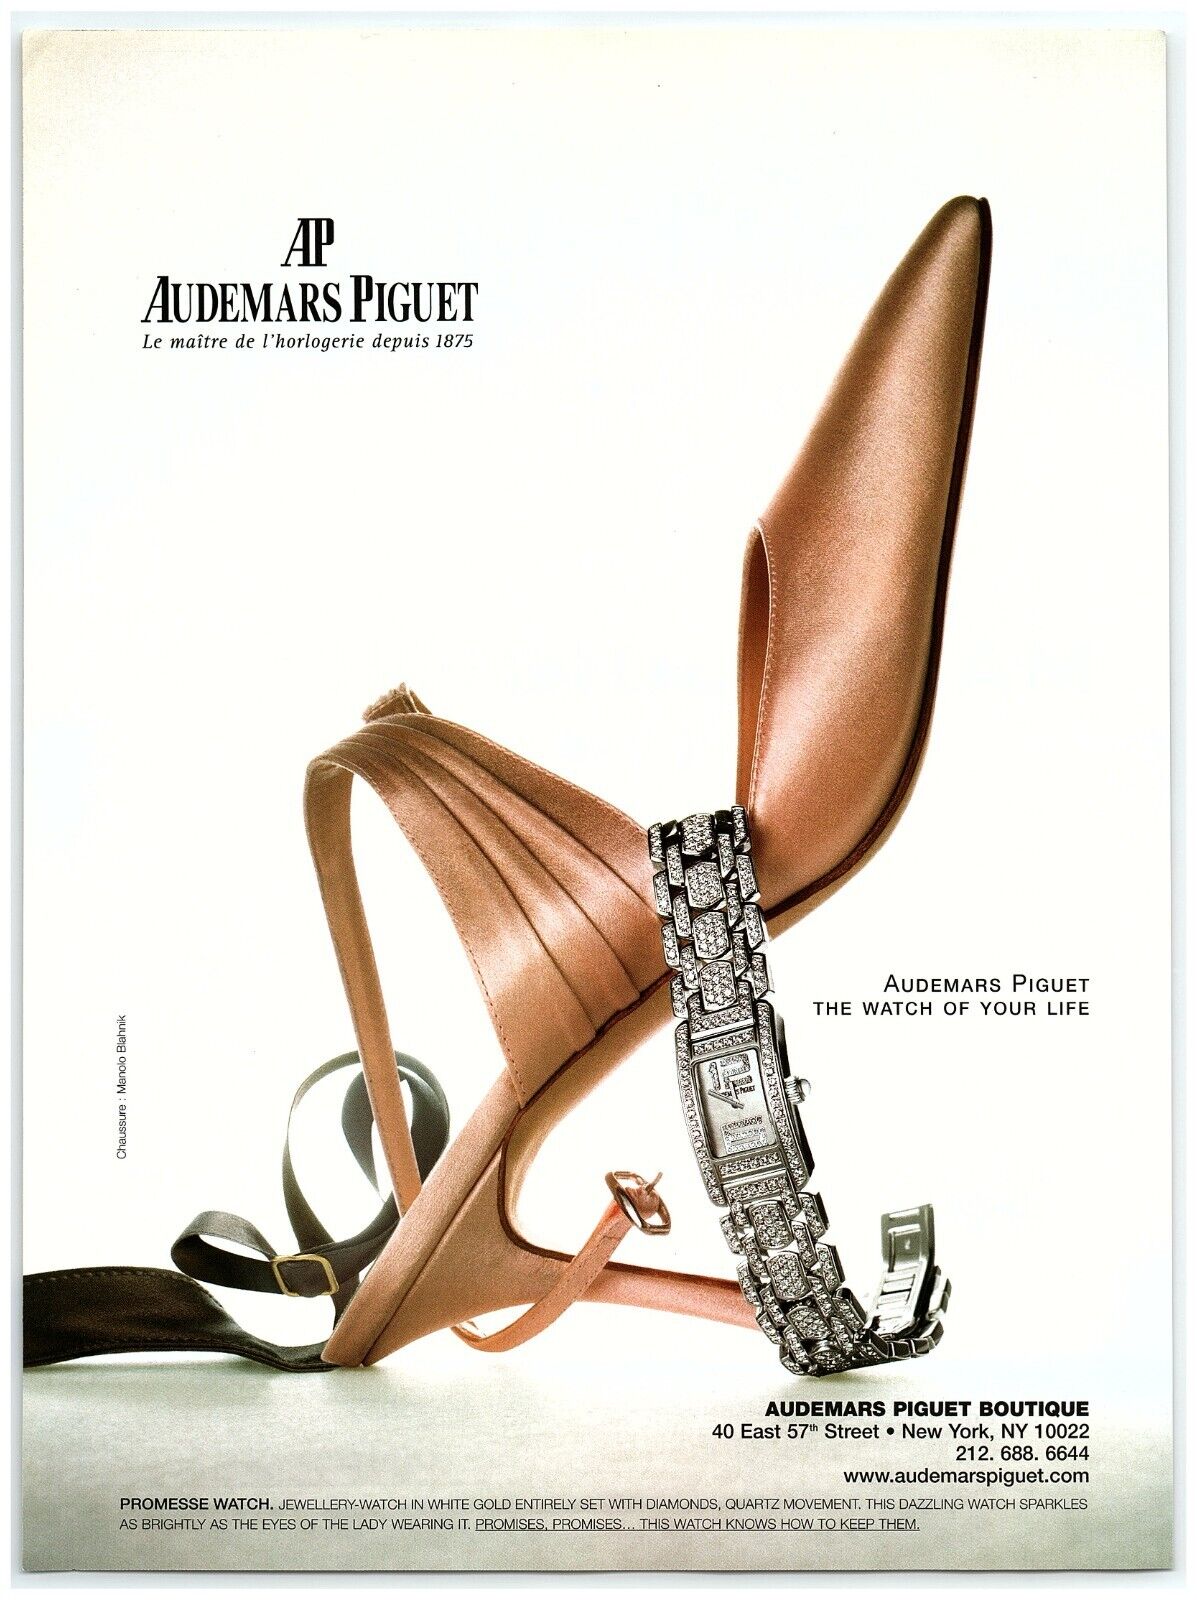 2004 Audemars Piguet Boutique Print Ad, The Watch of Your Life Manolo Blahnik